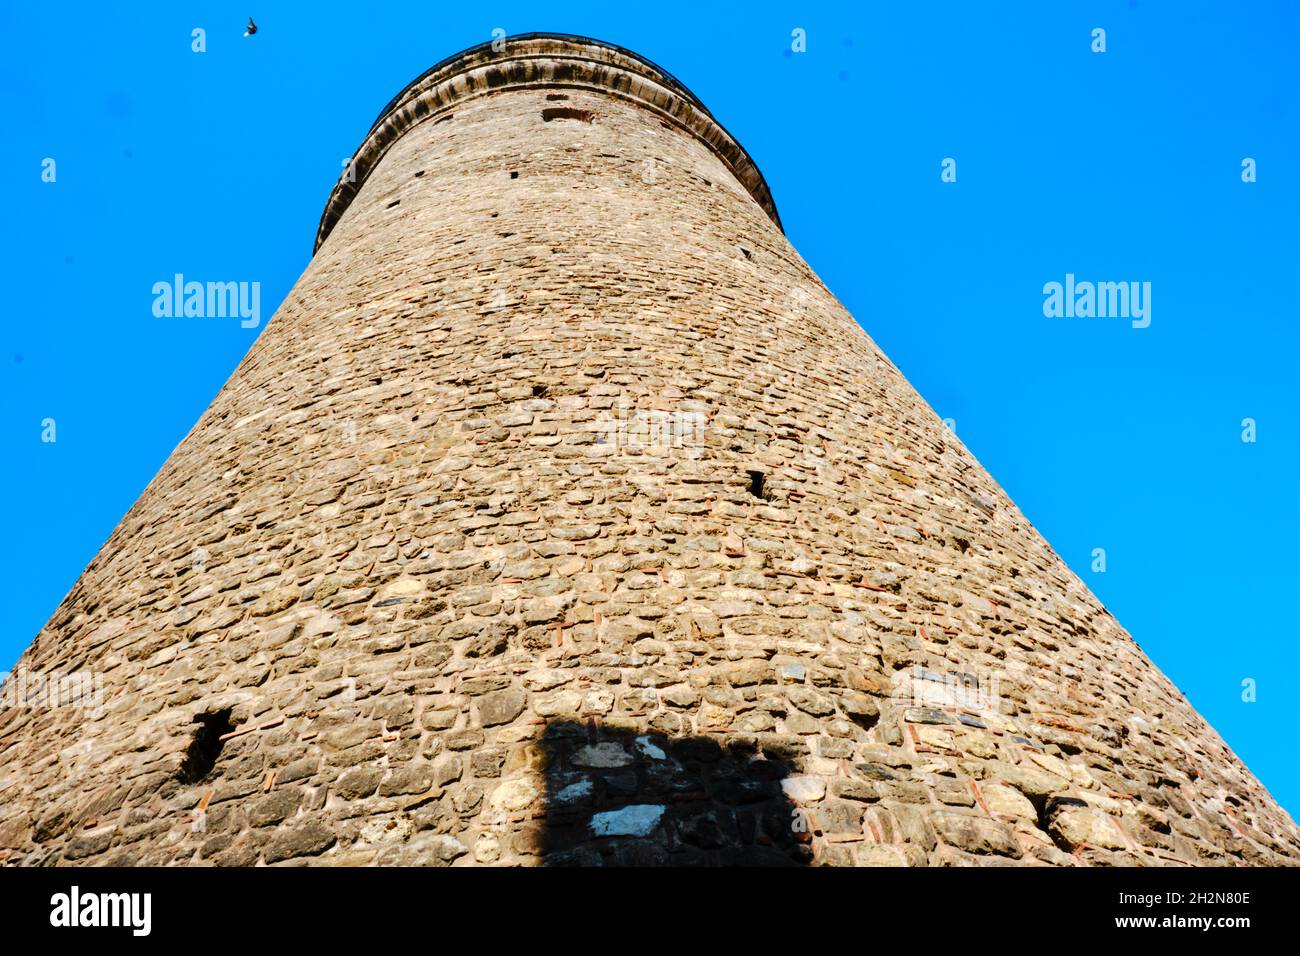 Galata Turm istanbul zur Beobachtung des bosporus von konstantinopel gegründet. Foto, das am frühen Morgen aufgenommen wurde. Stockfoto